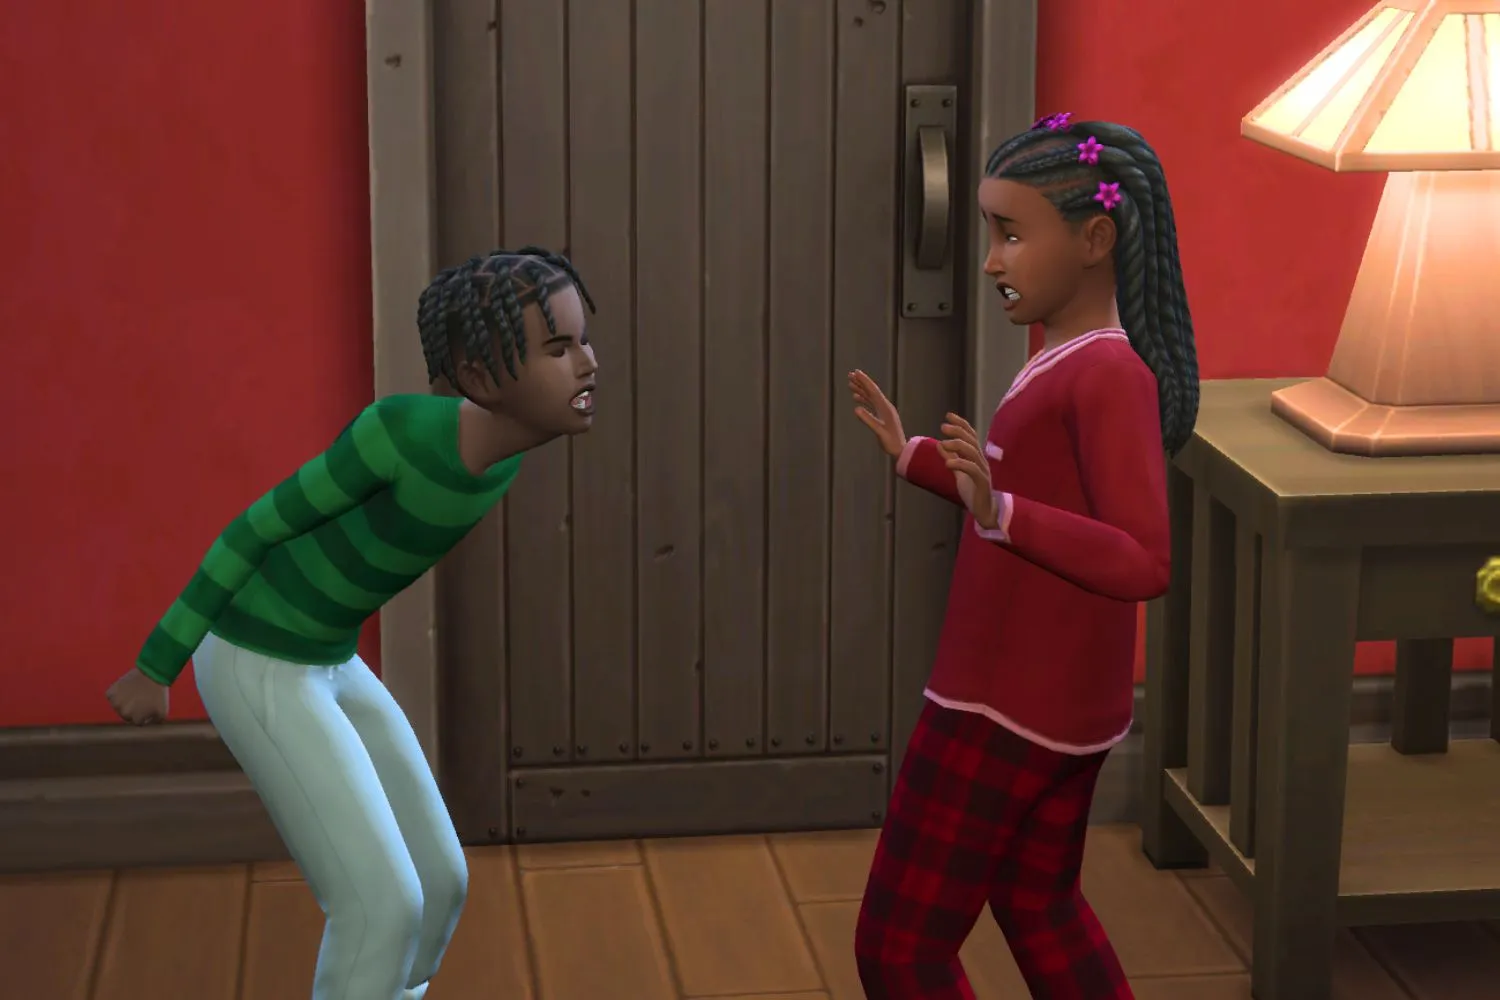 Dois Sims crianças gritando e brigando um com o outro